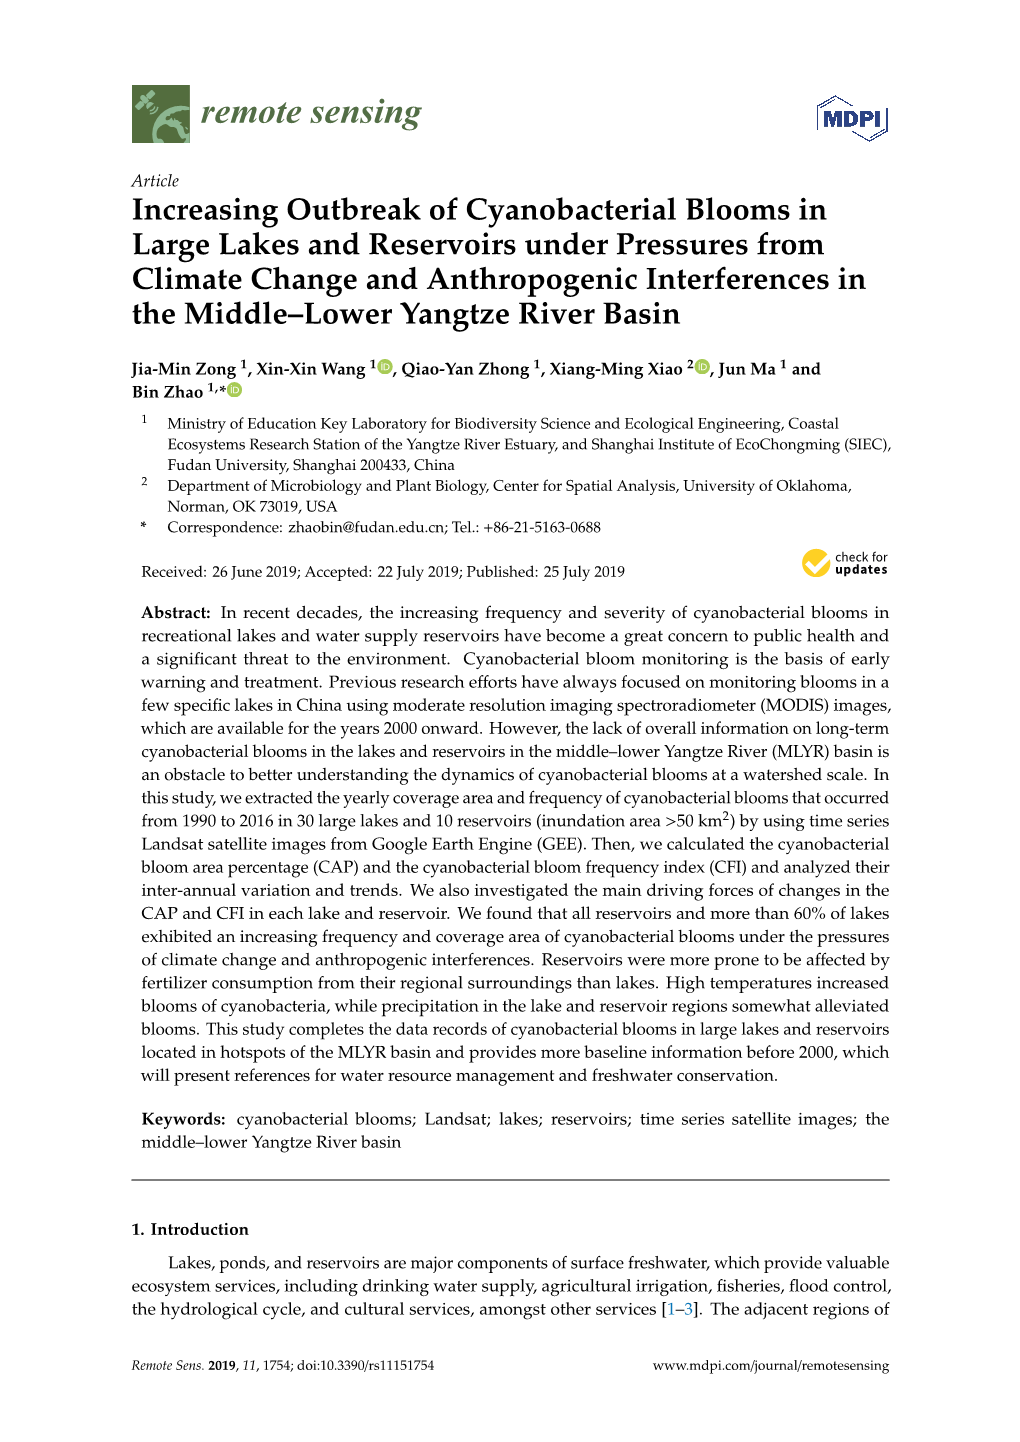 Increasing Outbreak of Cyanobacterial Blooms in Large Lakes And